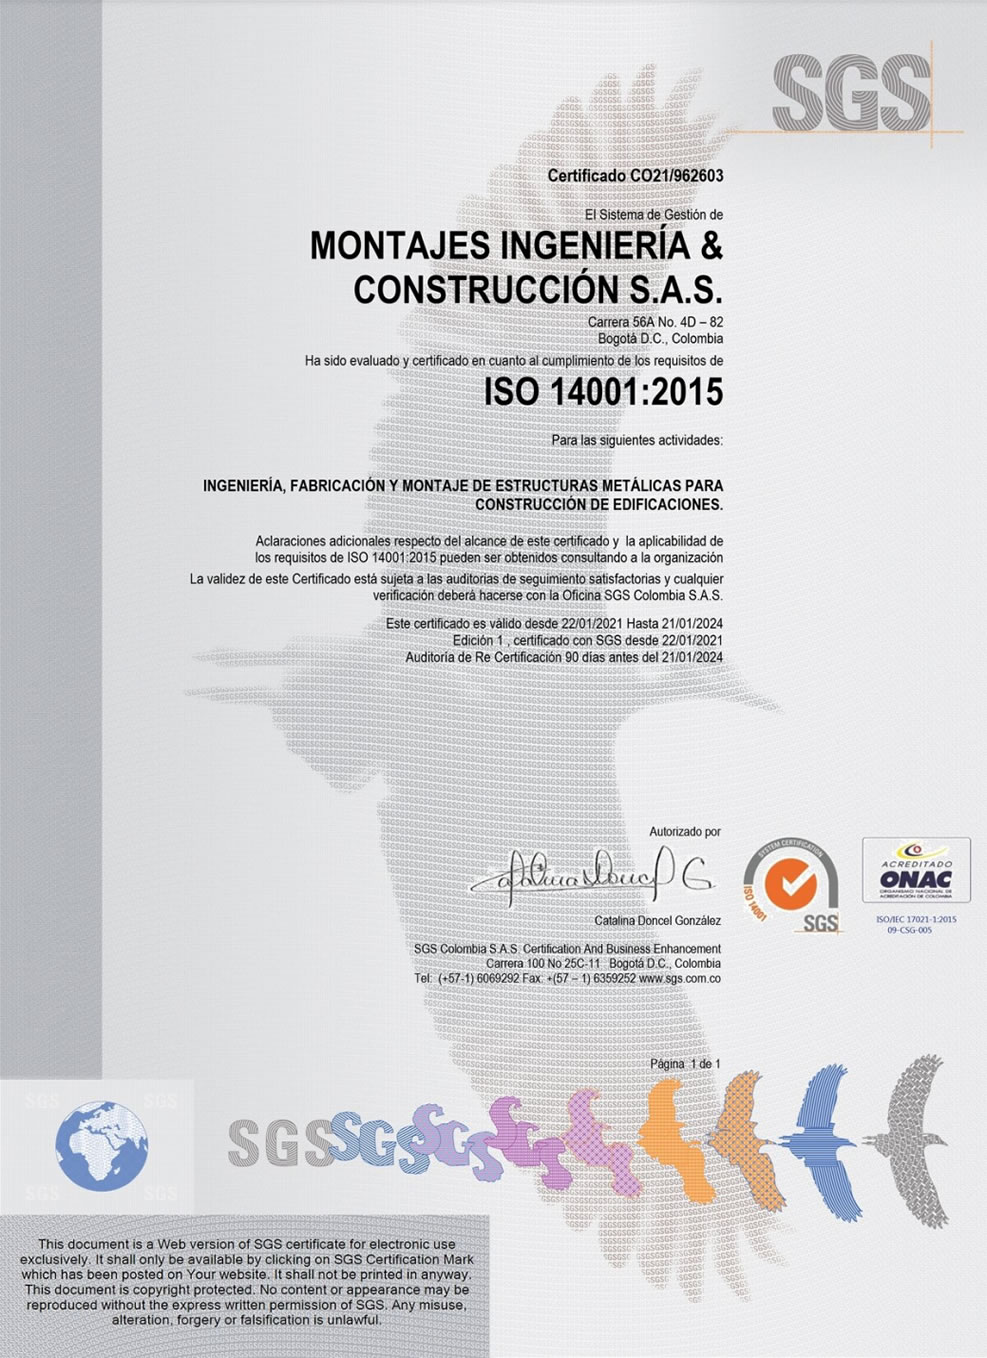 Certificación ISO 14001:2015 Montajes, Ingeniería y Construcción SAS. Bogotá, Colombia